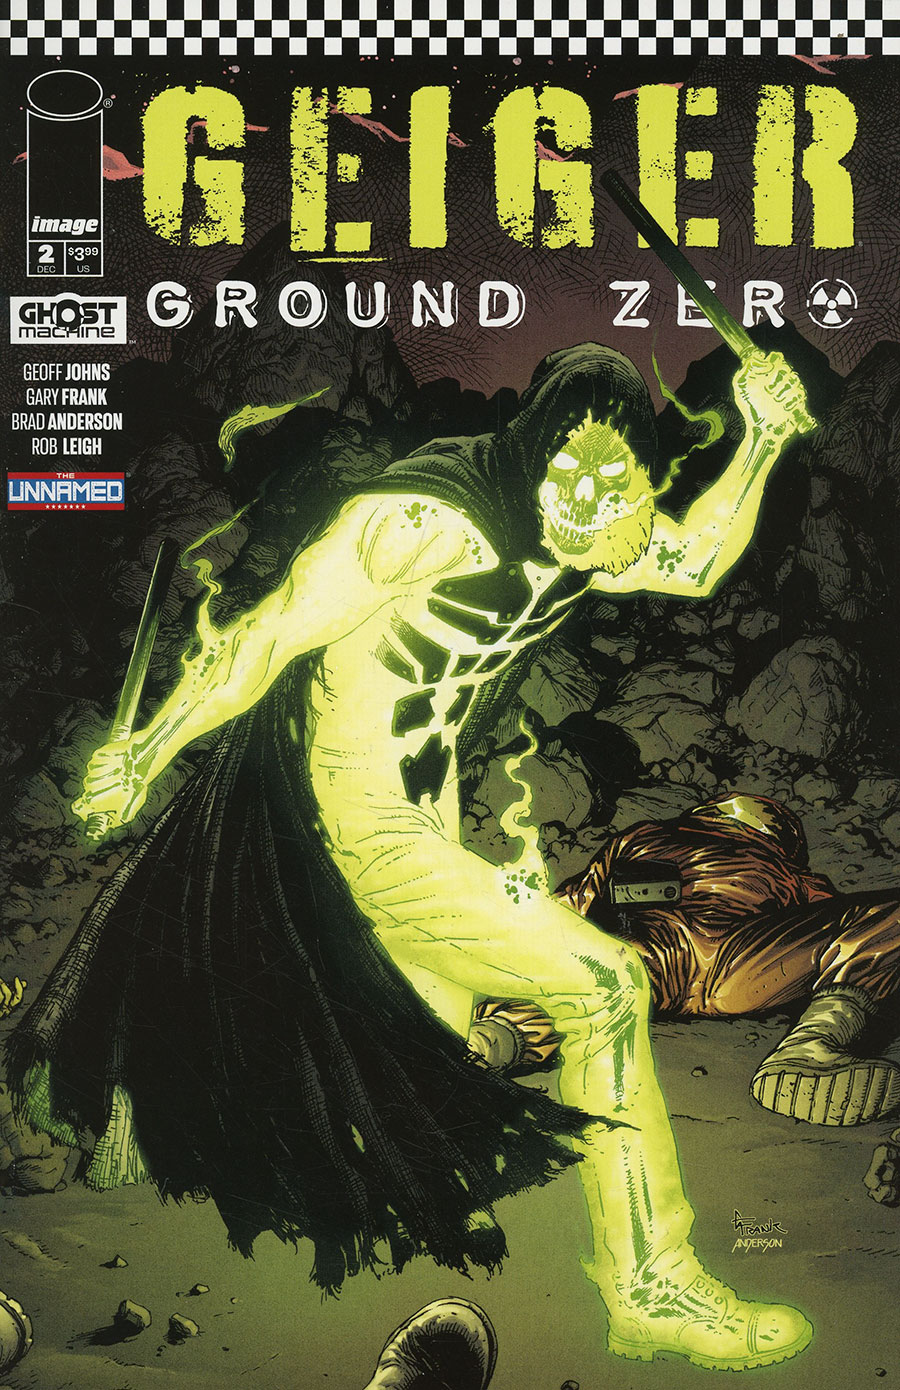 Geiger Ground Zero #2 Cover A Regular Gary Frank Cover